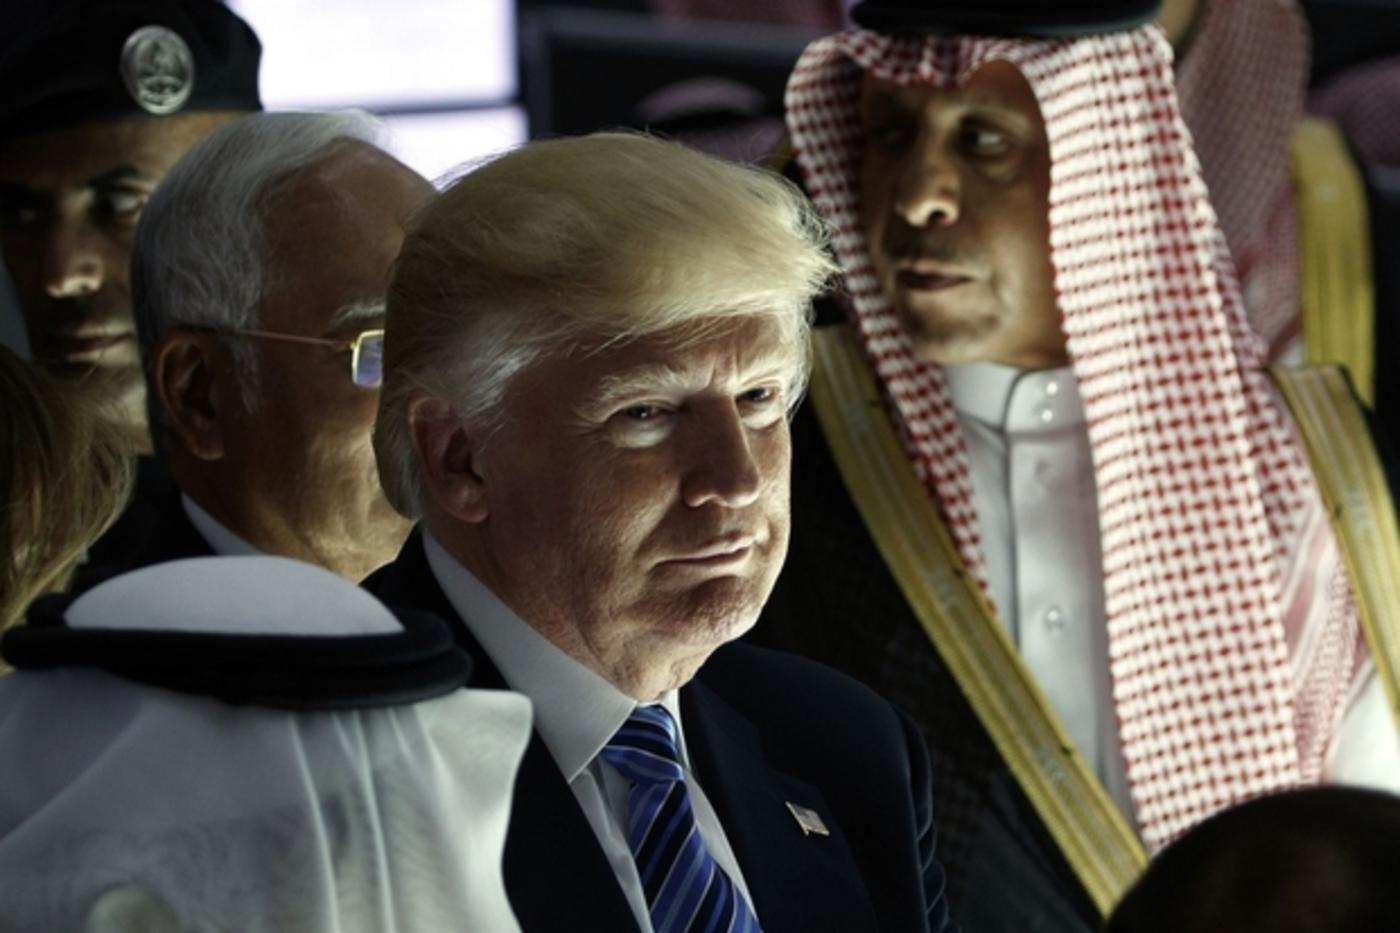 Le président Donald Trump pendant la cérémonie d’ouverture du Centre mondial de lutte contre l’idéologie extrémiste, le dimanche 21 mai 2017, à Riyad (AP)